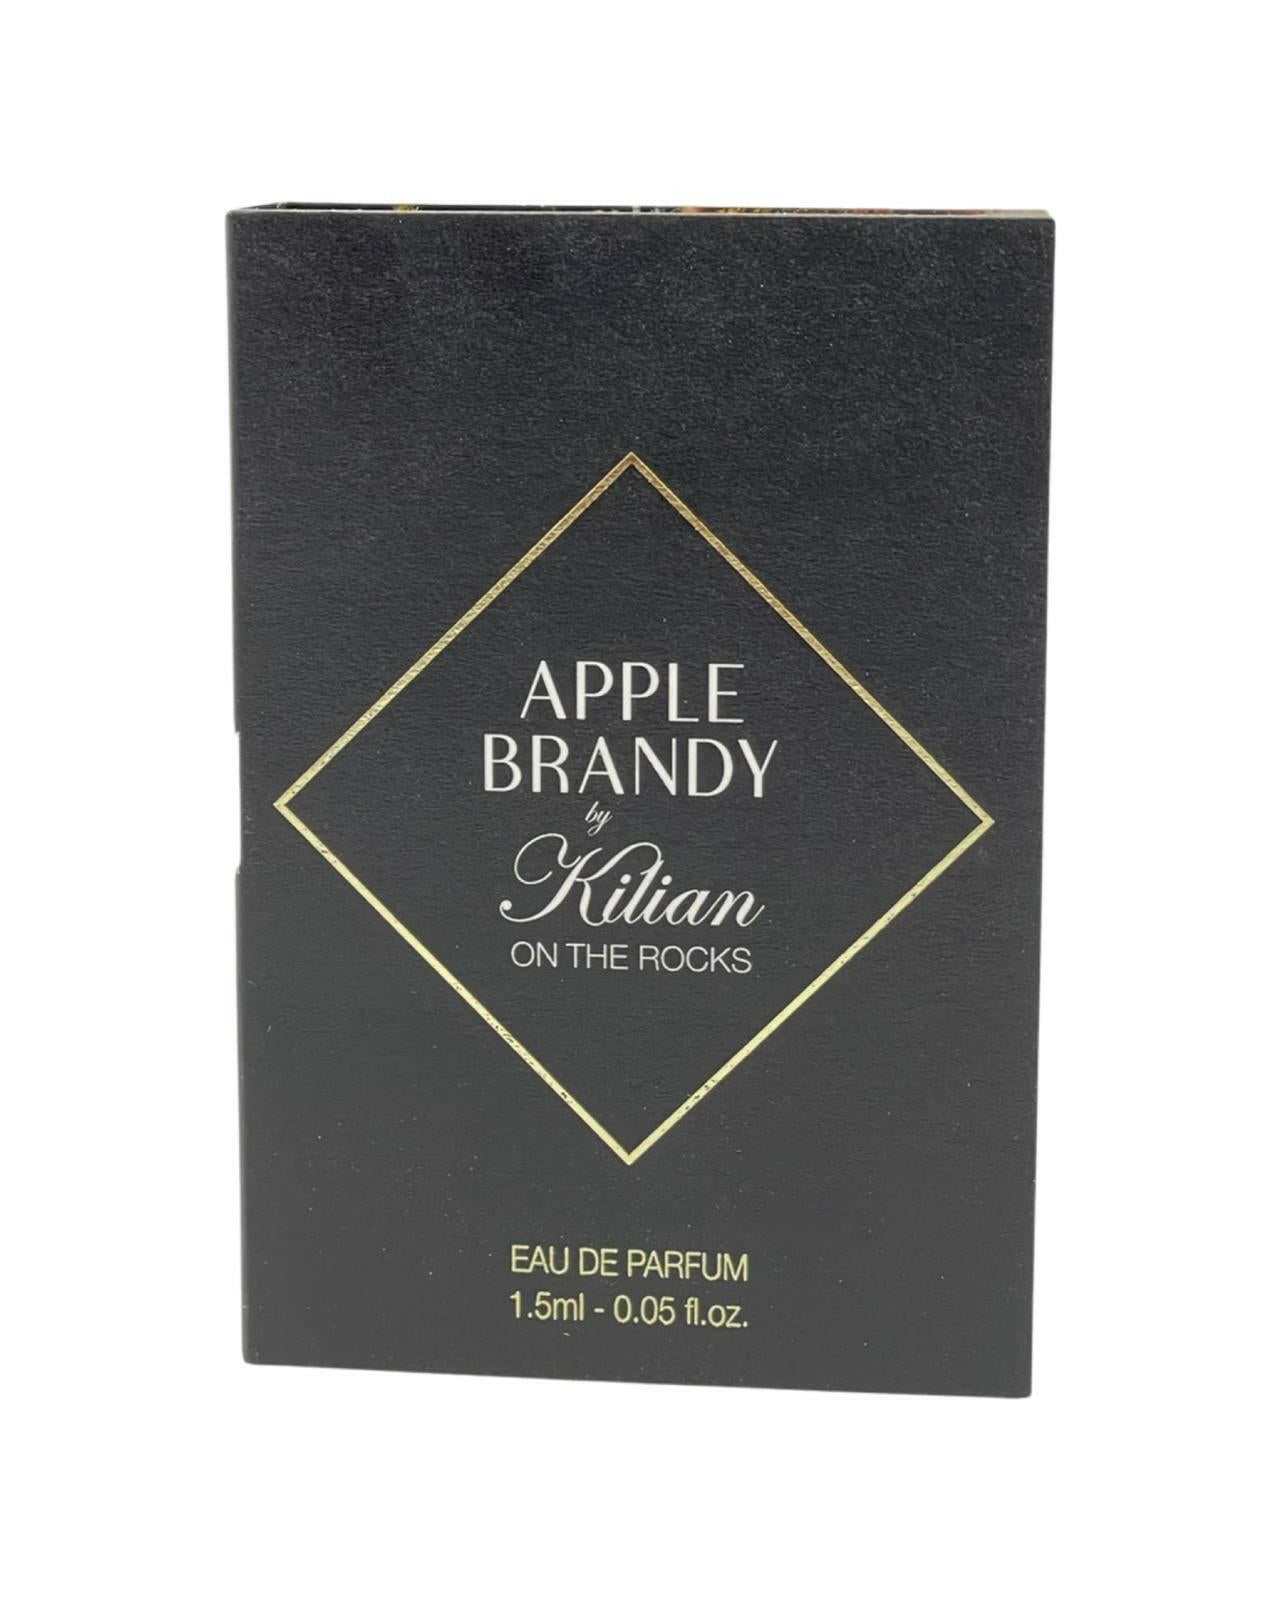 Kilian - Apple Brandy on the rocks - 1.5ml.